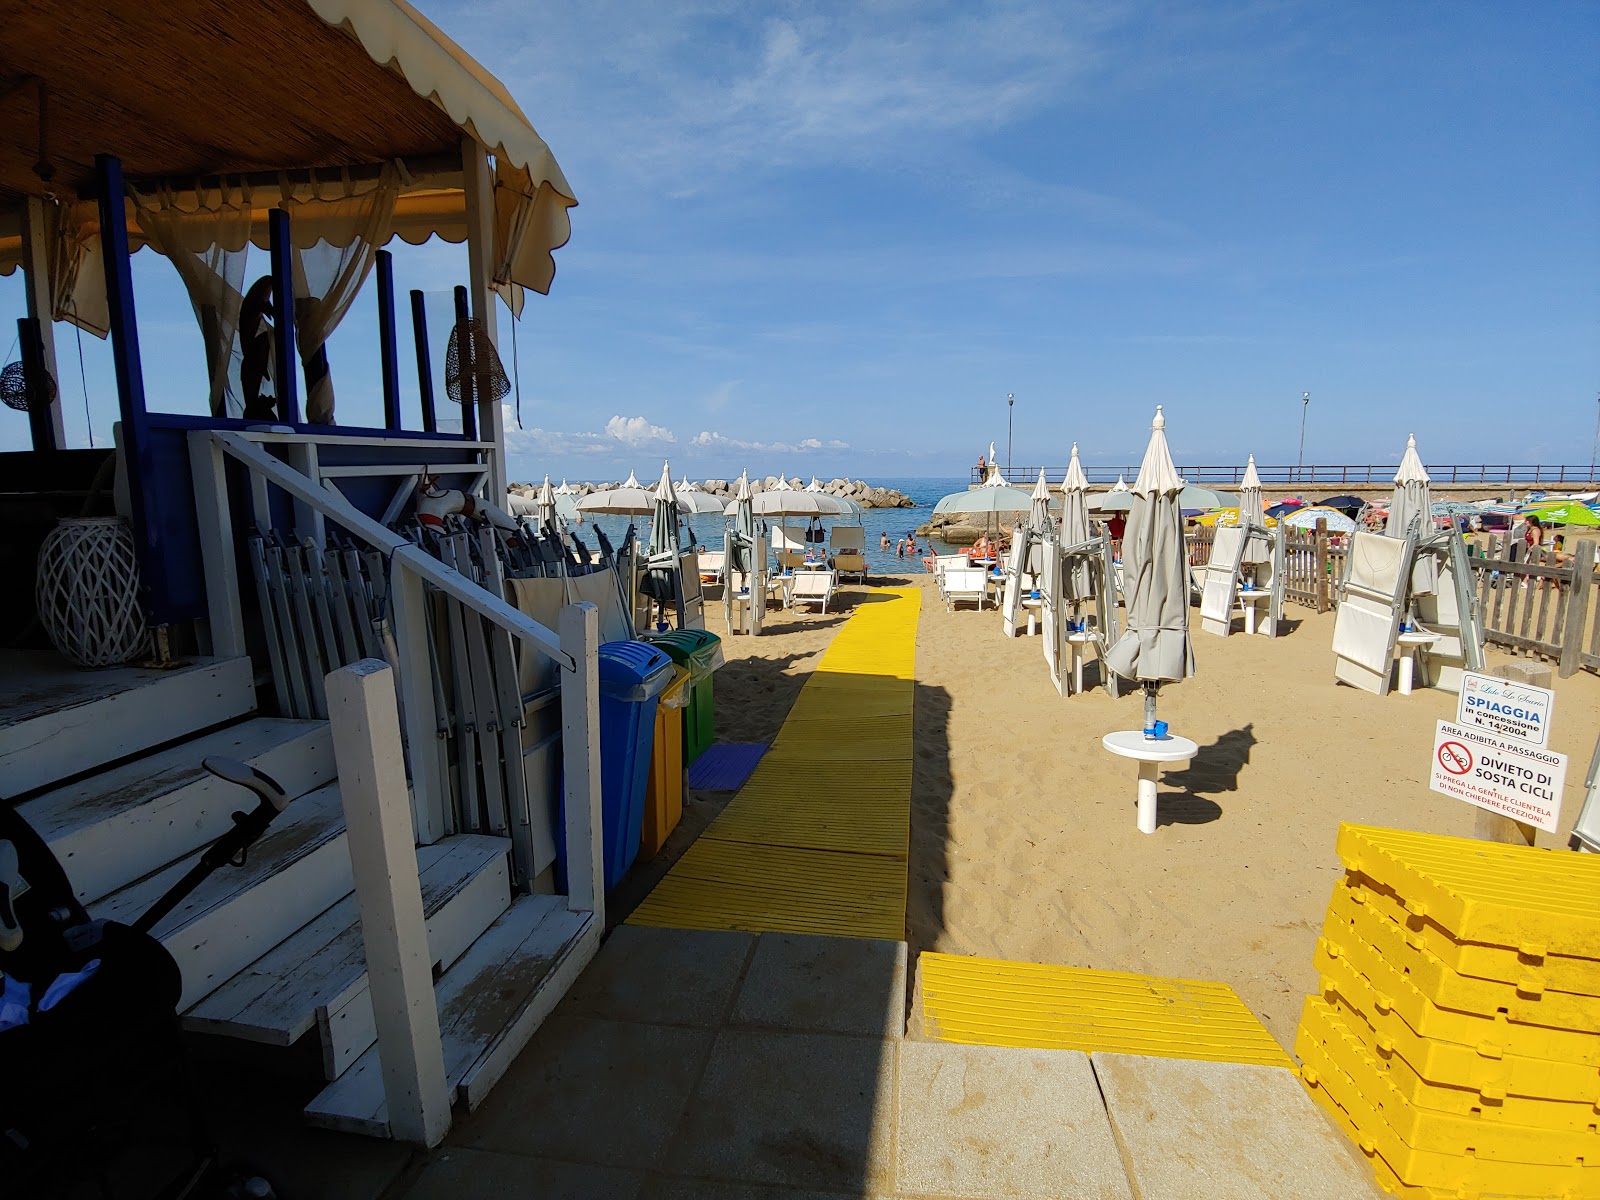 Photo of Spiaggia dello Scario beach resort area